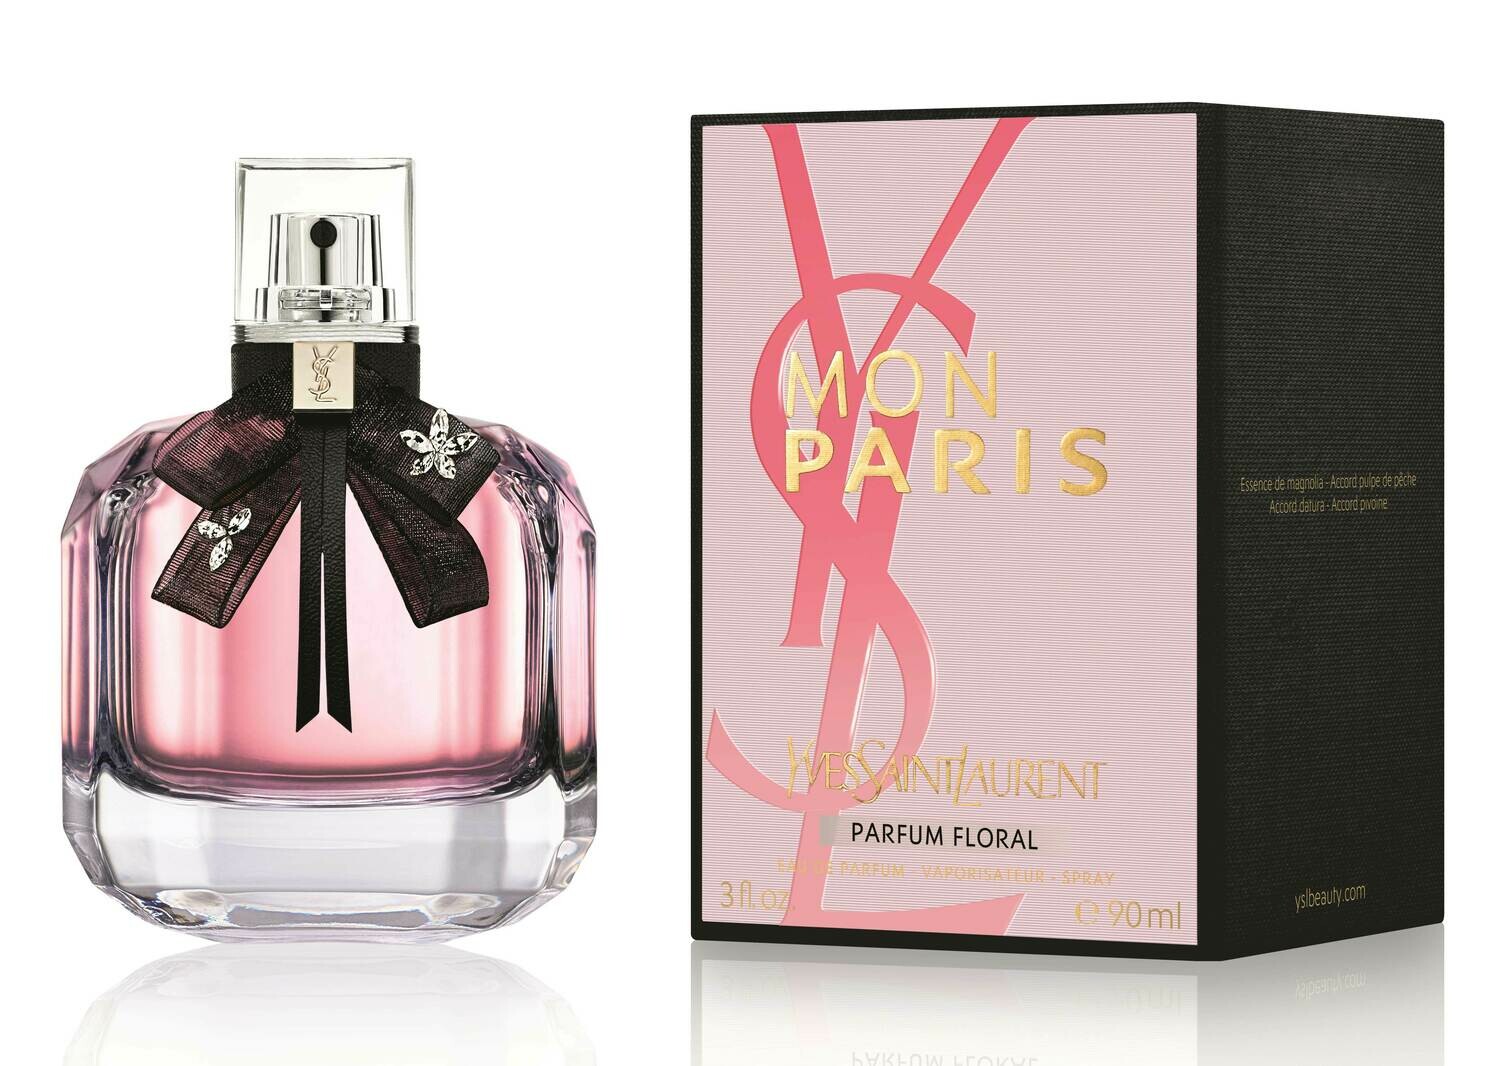 Mon Paris Parfum Floral - Yves Saint Laurent